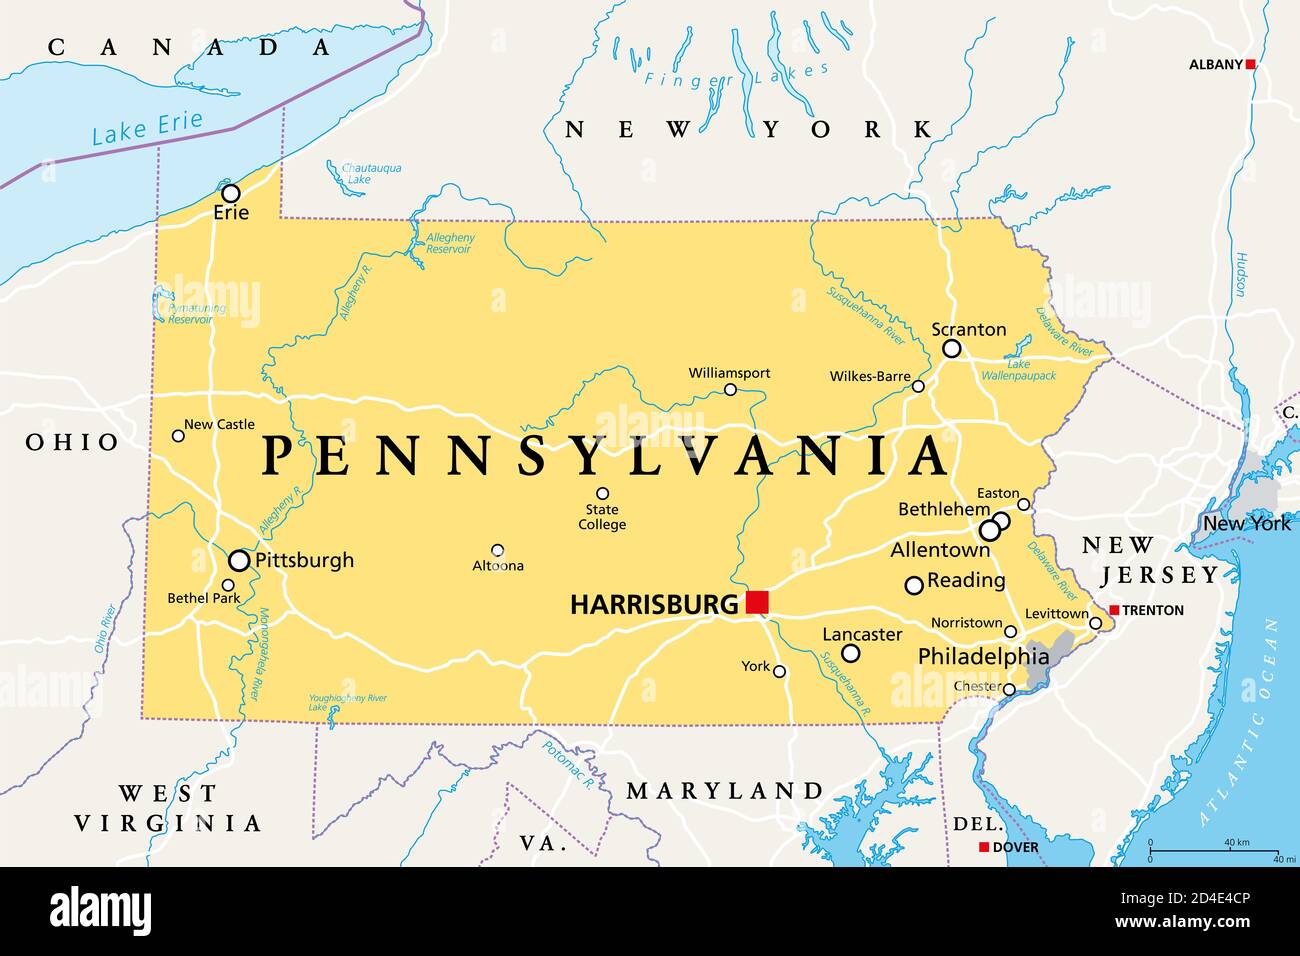 Pennsylvania, PA, mapa político. Oficialmente el Estado libre asociado de Pensilvania. Estado en el noreste de los Estados Unidos de América. Capital Harrisburg. Foto de stock